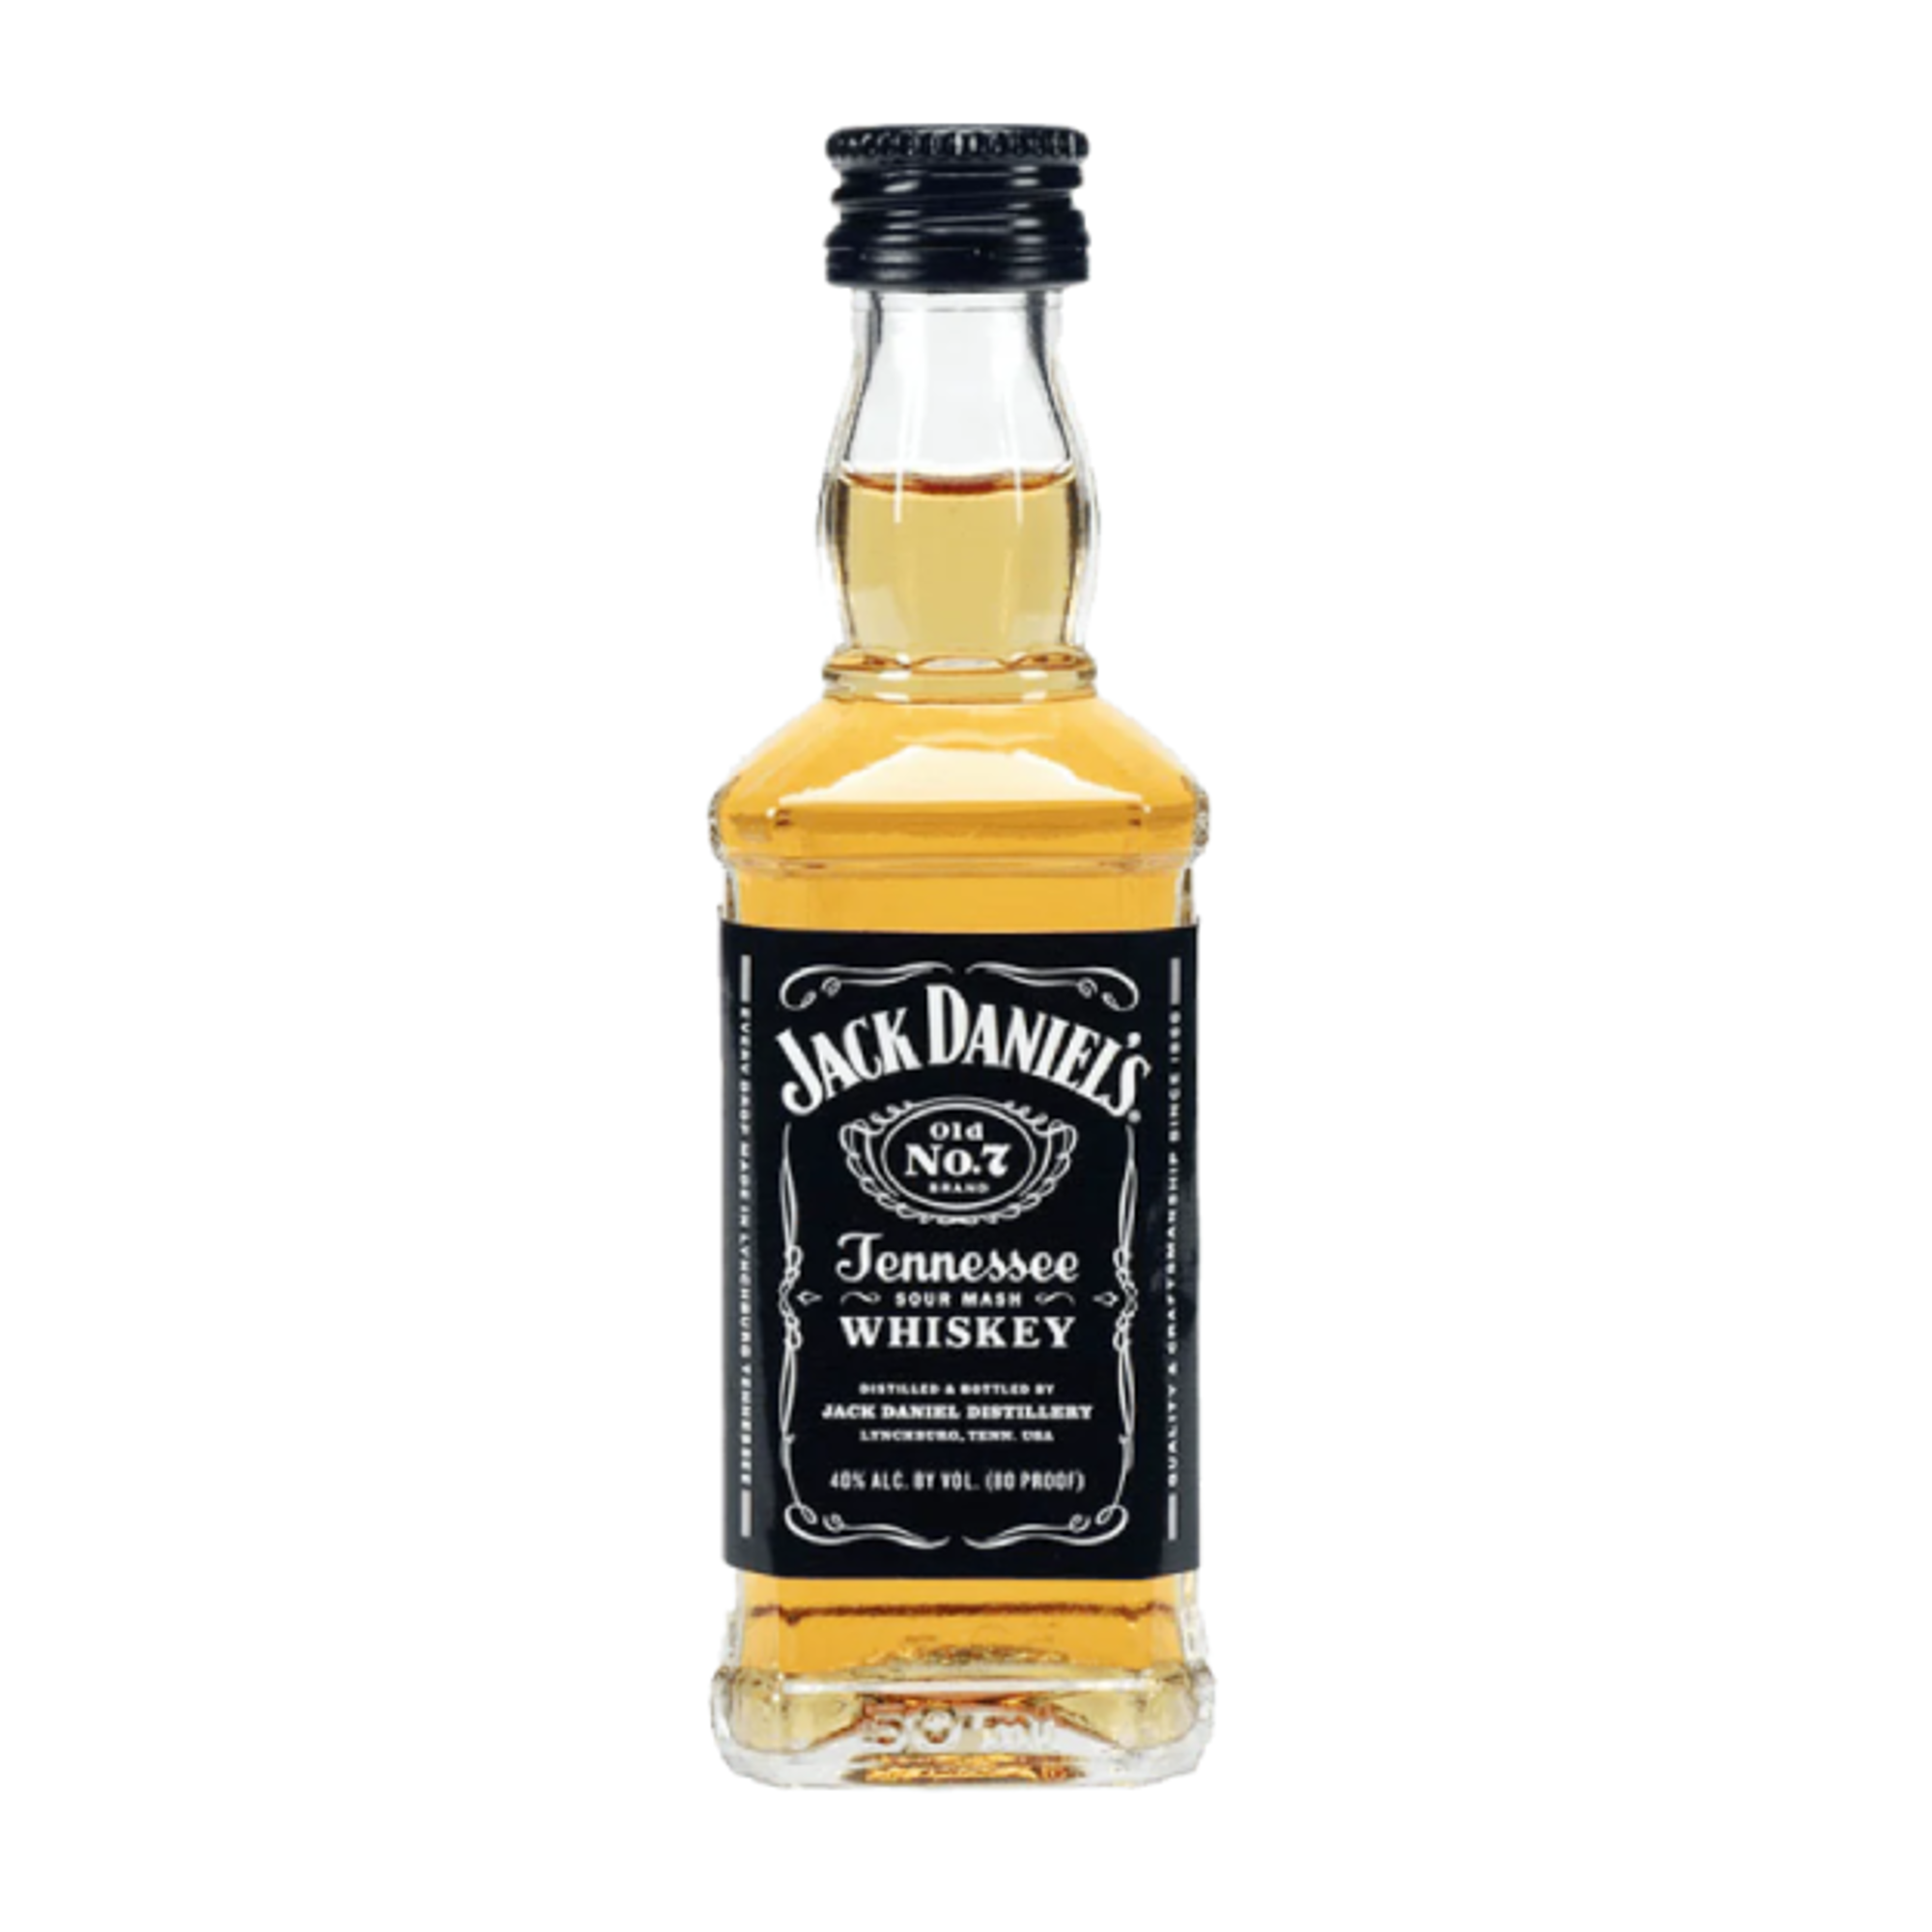 Mynd Jack Daniels 50ml